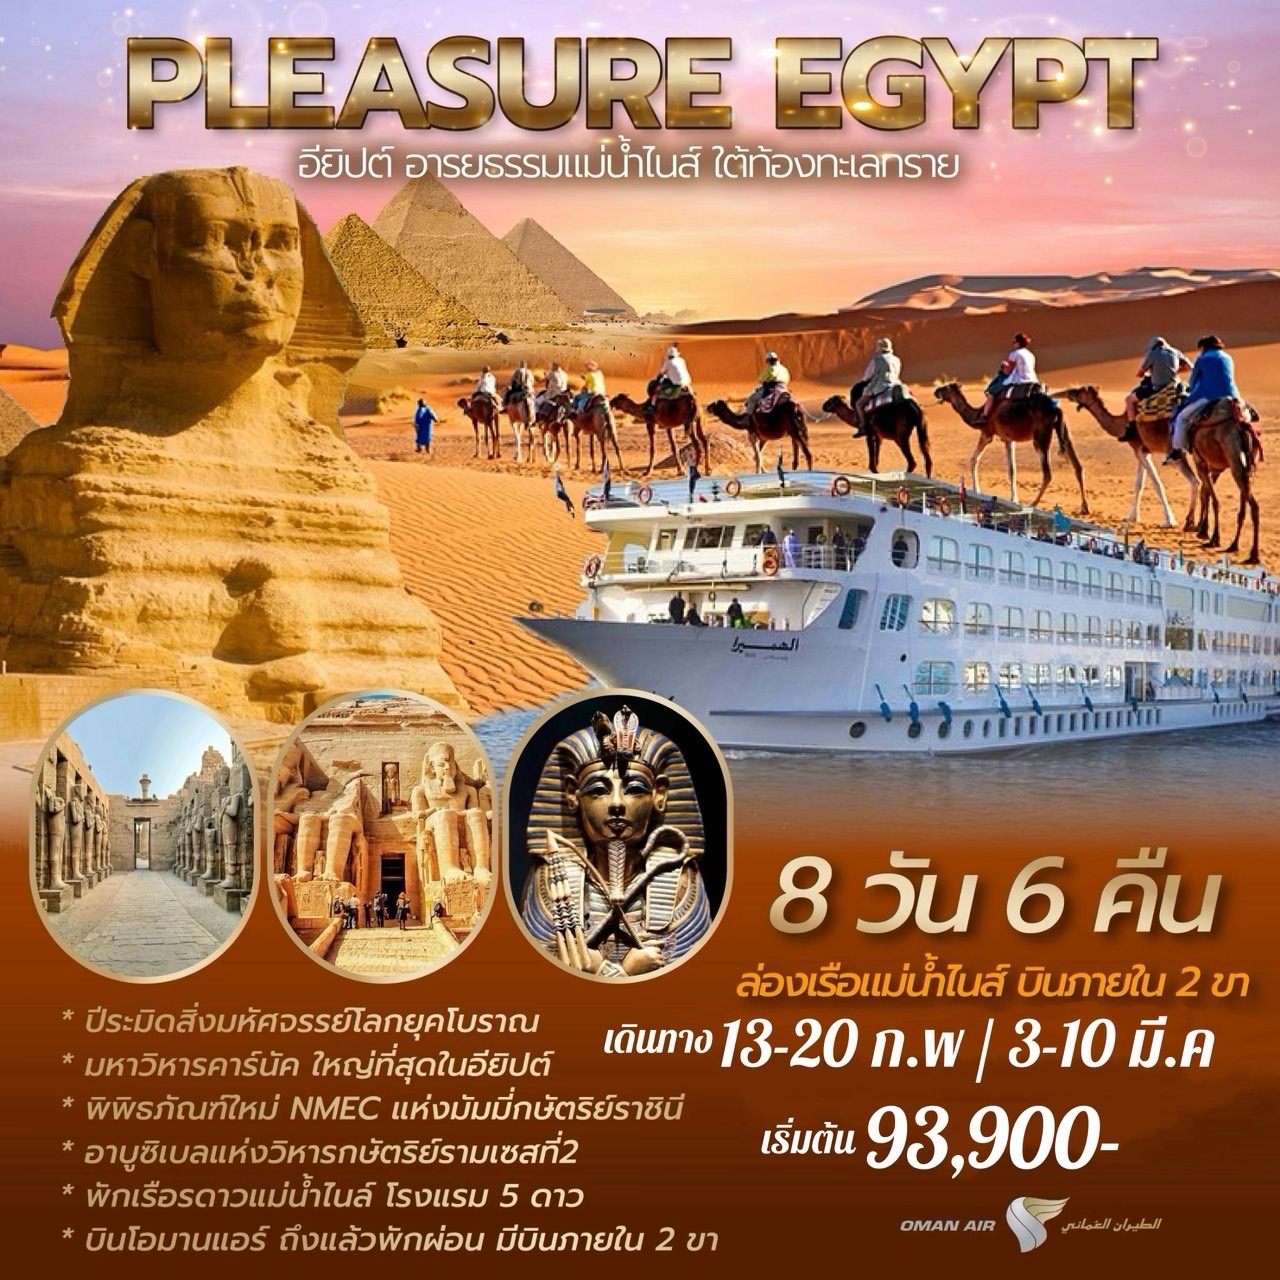 ทัวร์อียิปต์ PLEASURE EGYPT อียิปต์ อารยธรรมแม่น้ำไนส์ ใต้ท้องทะเลทราย 8 วัน 6 คืน